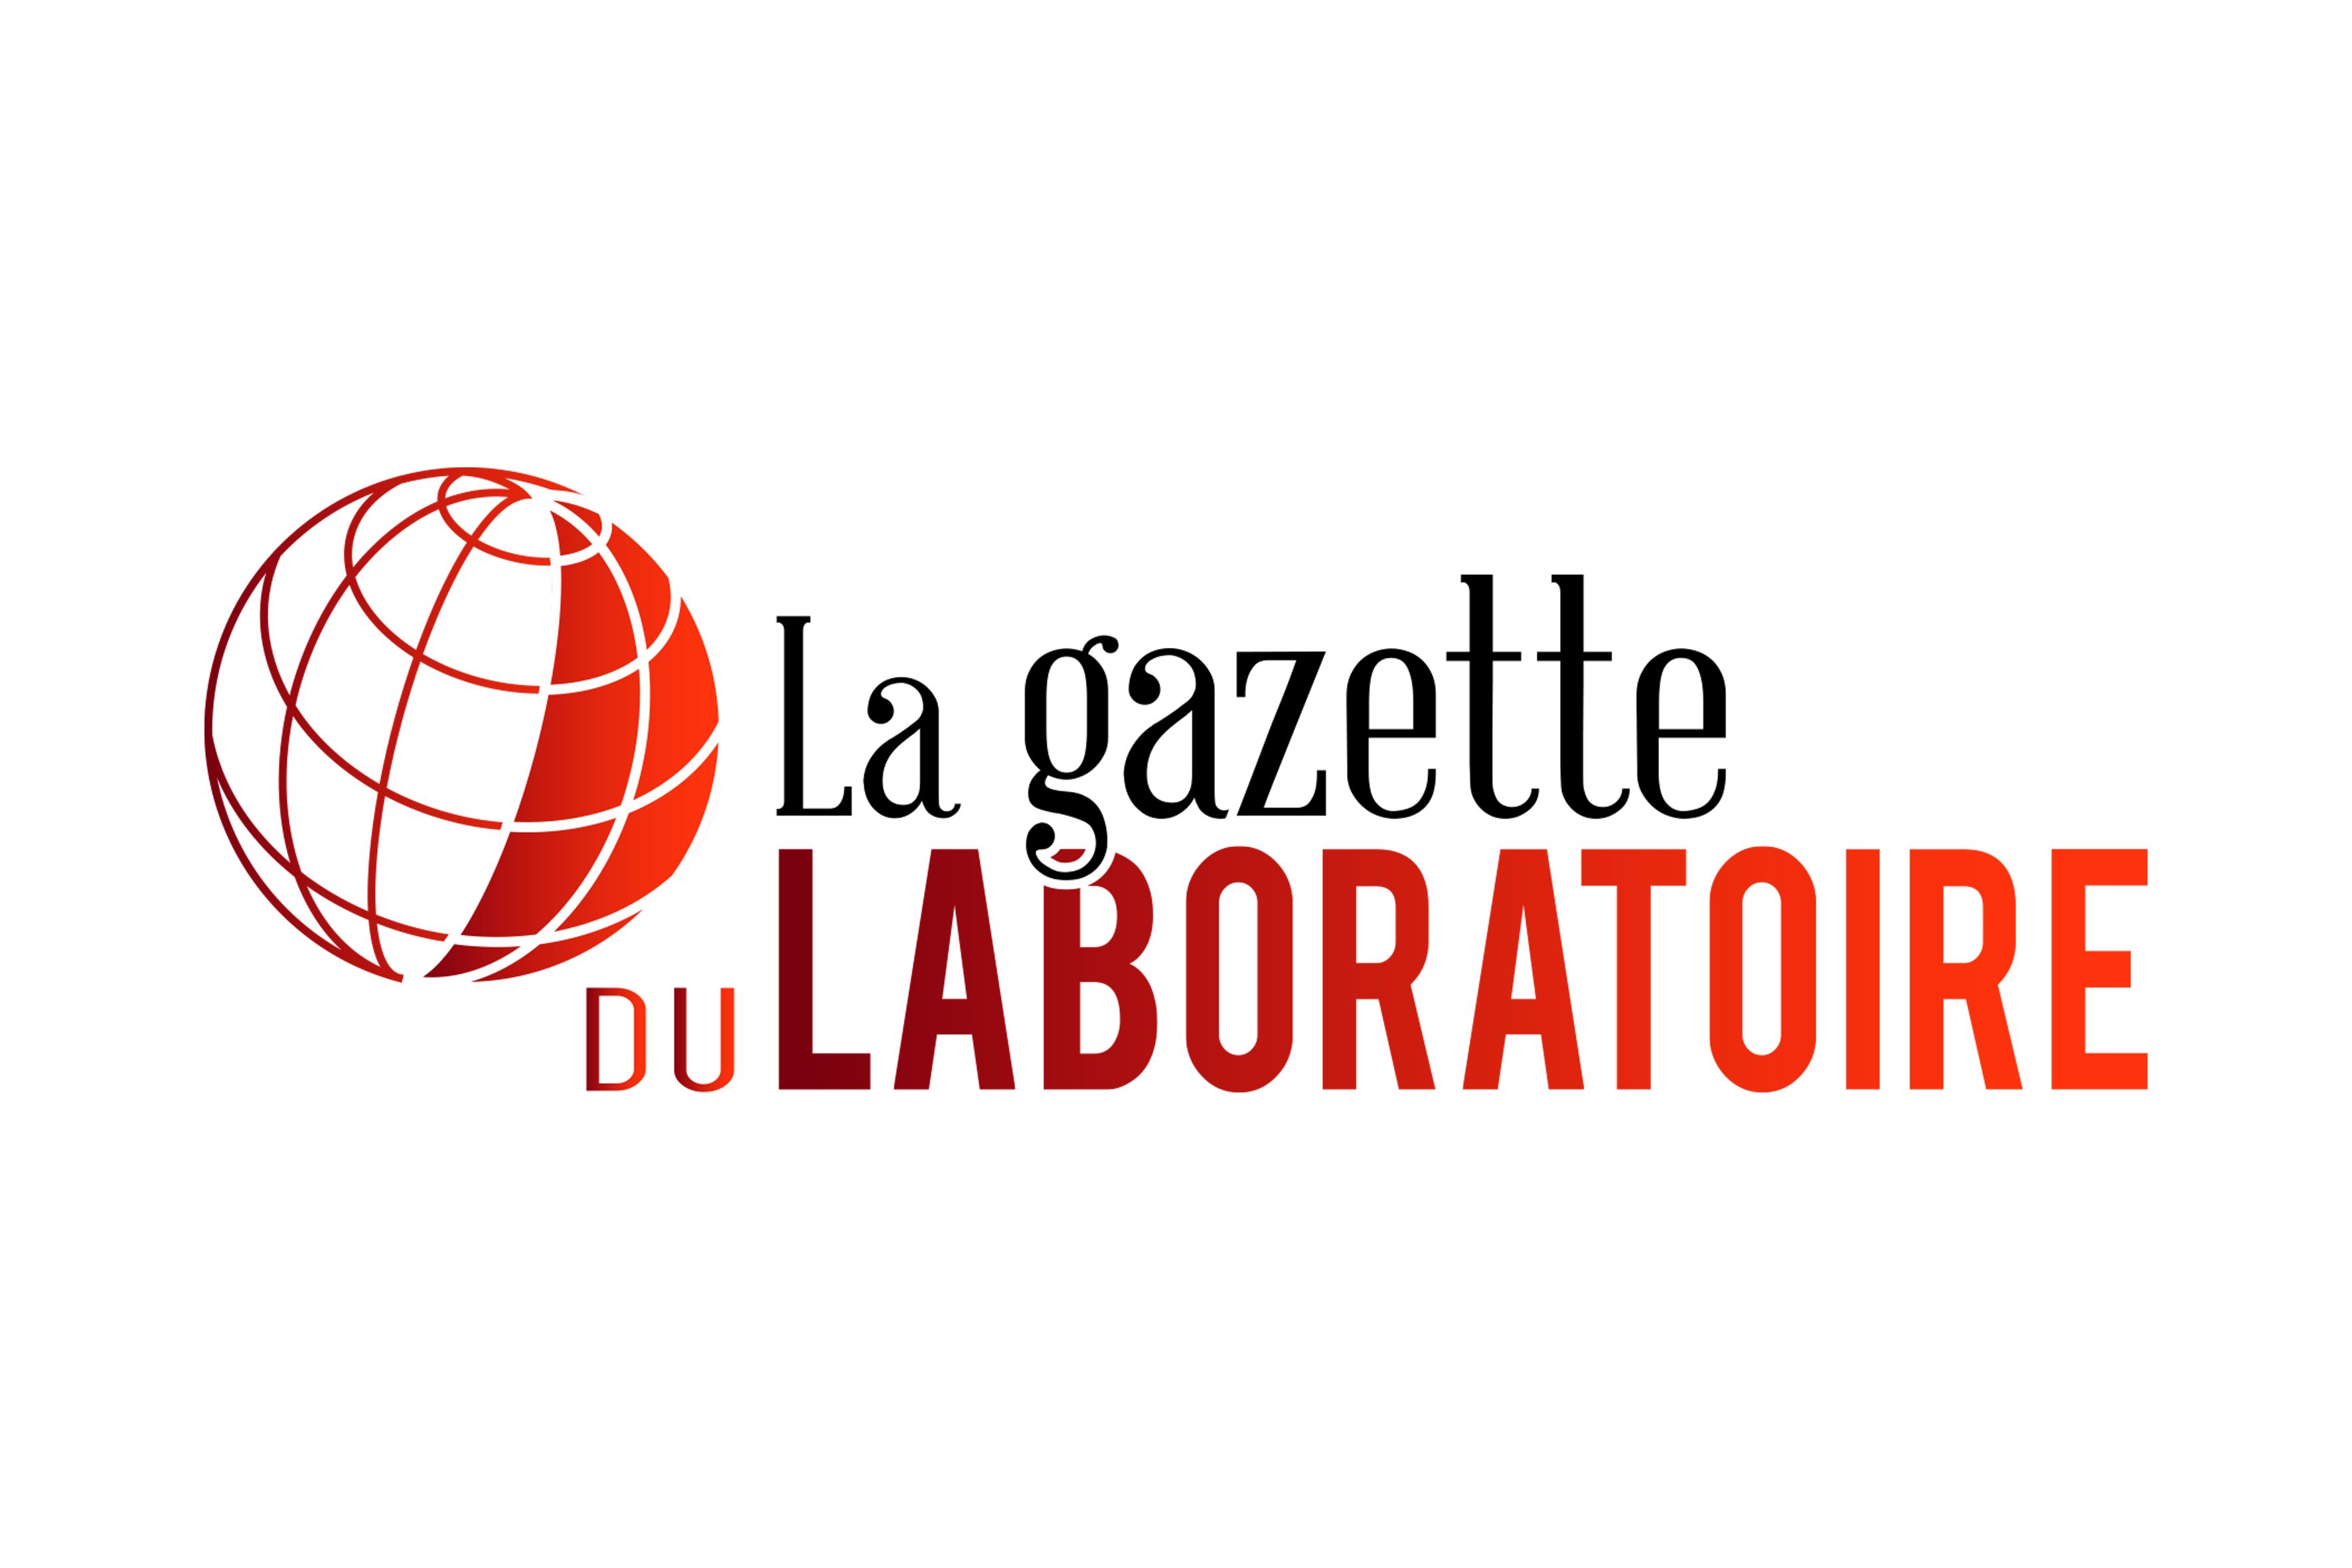 Gazette du labo